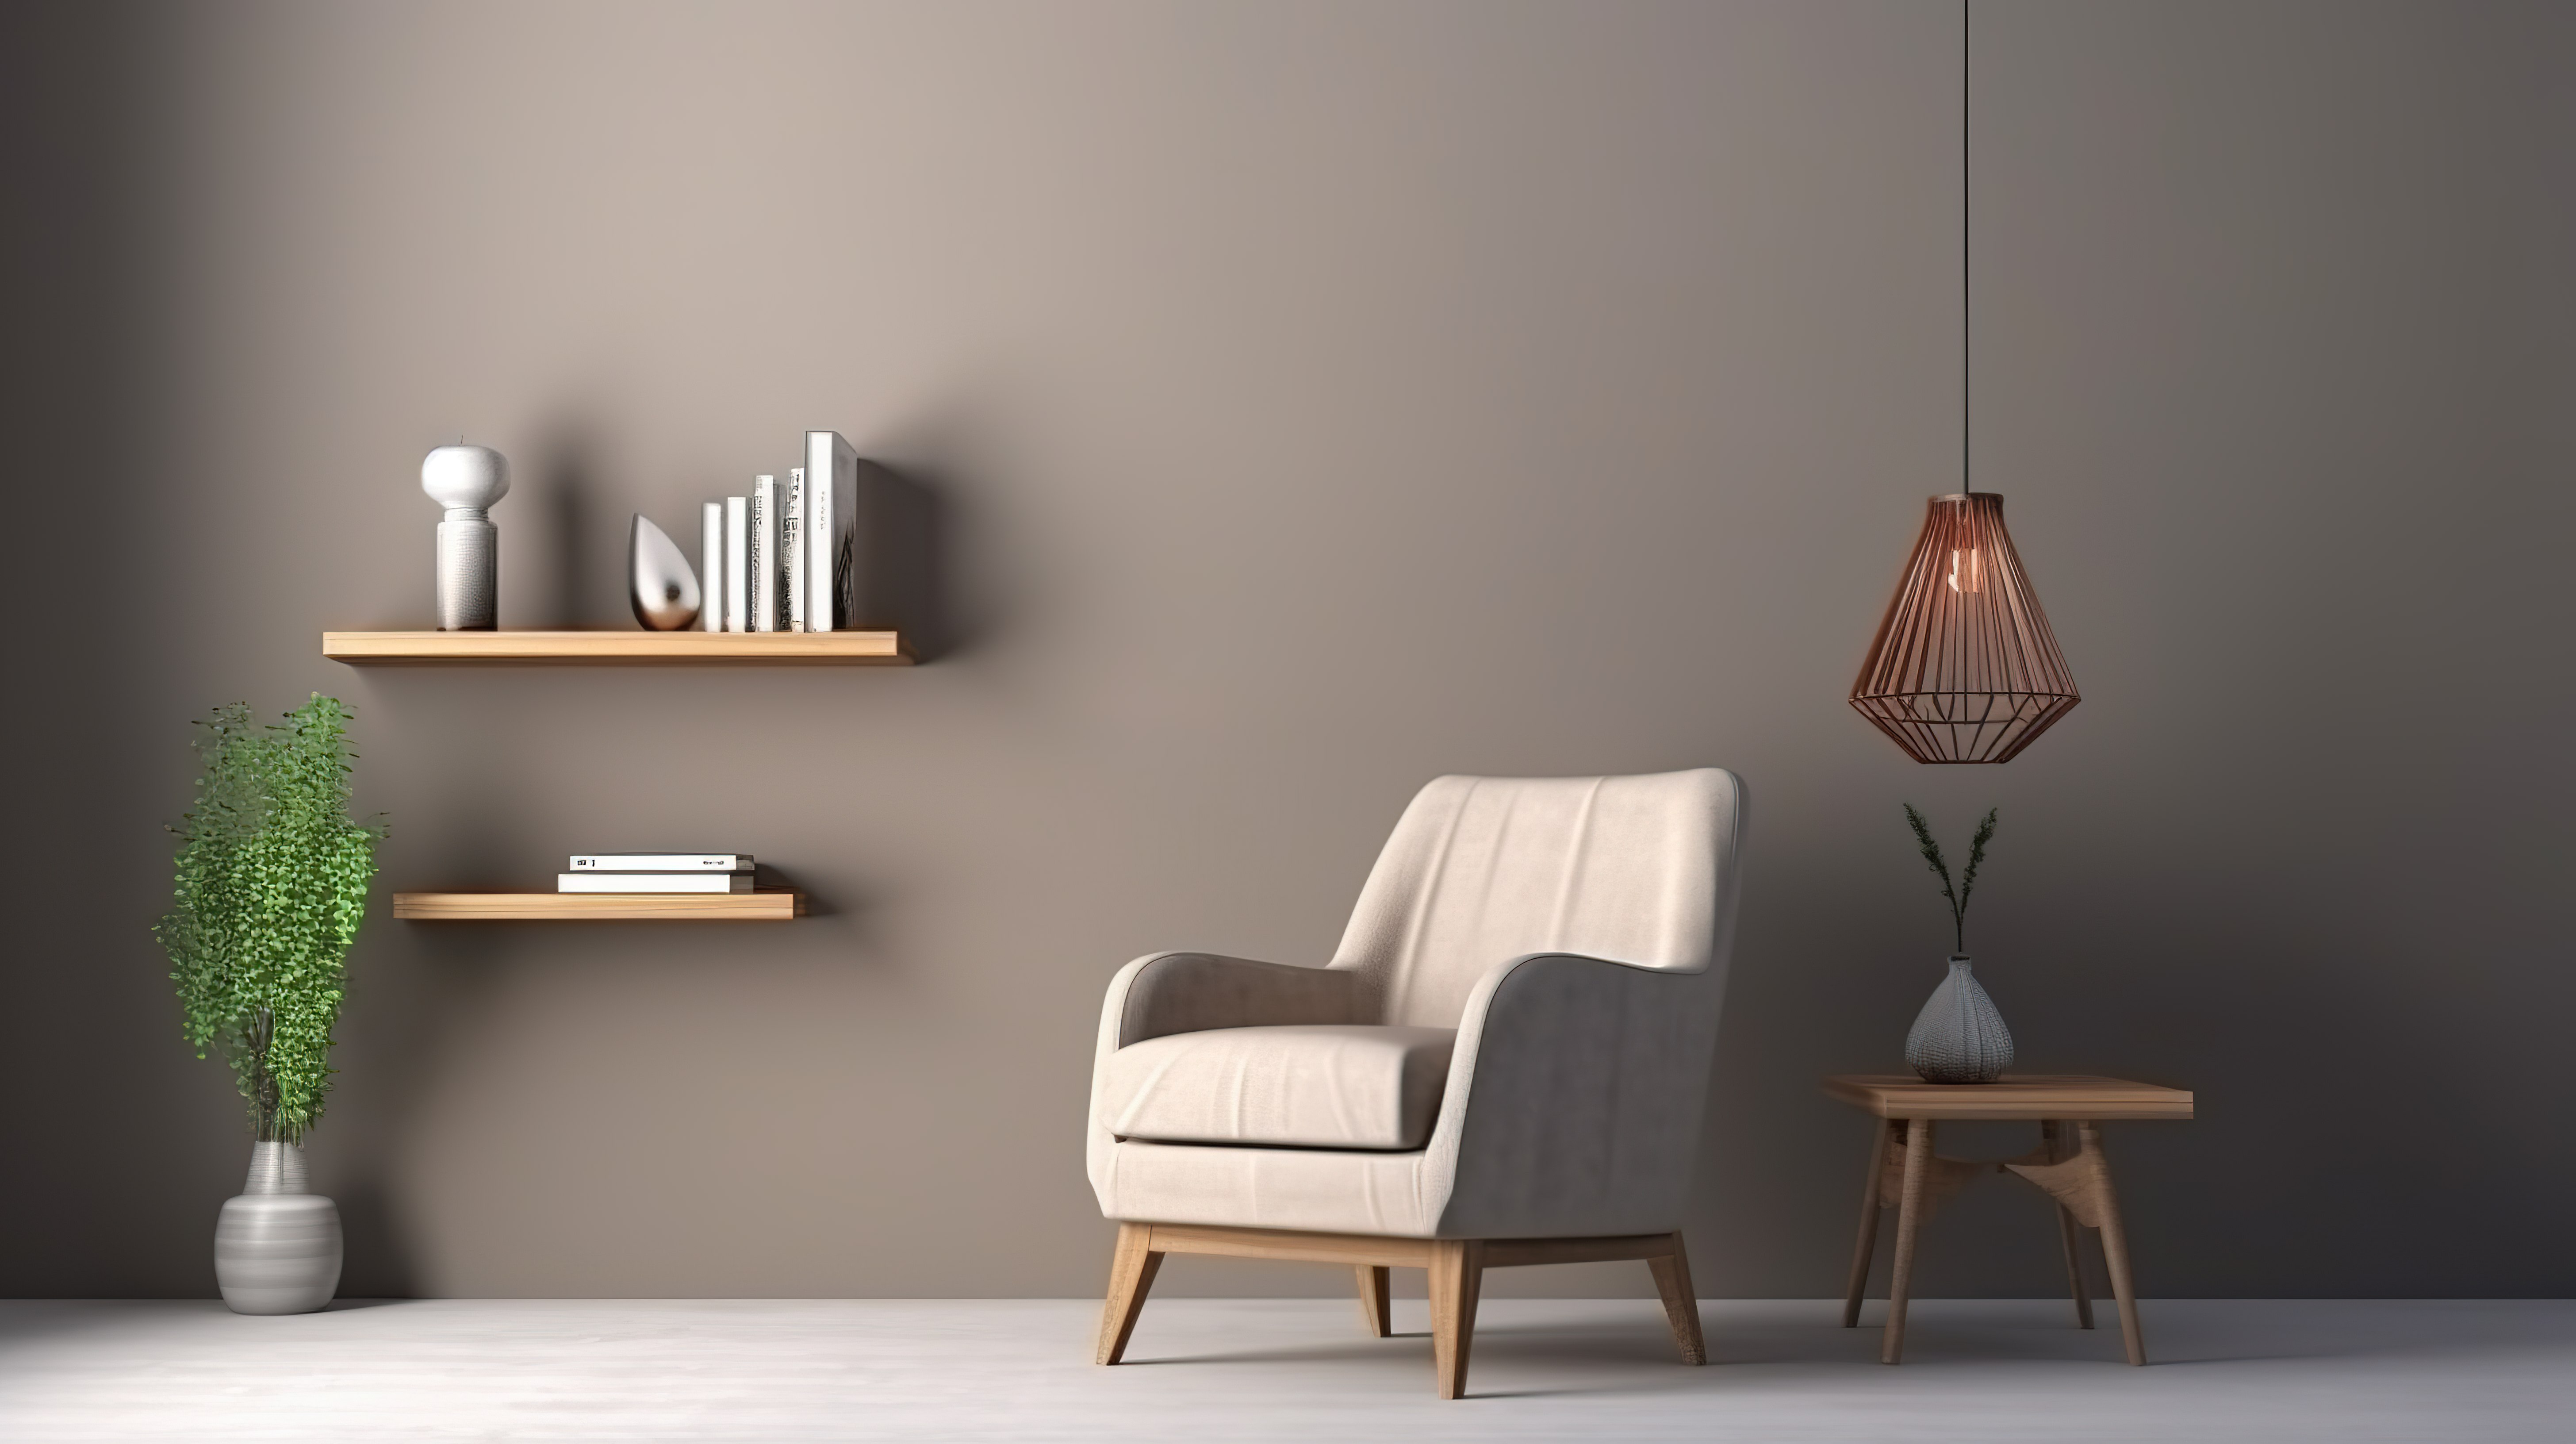 灰色墙壁 3d 渲染上配有扶手椅吊灯和书架的简单空间图片